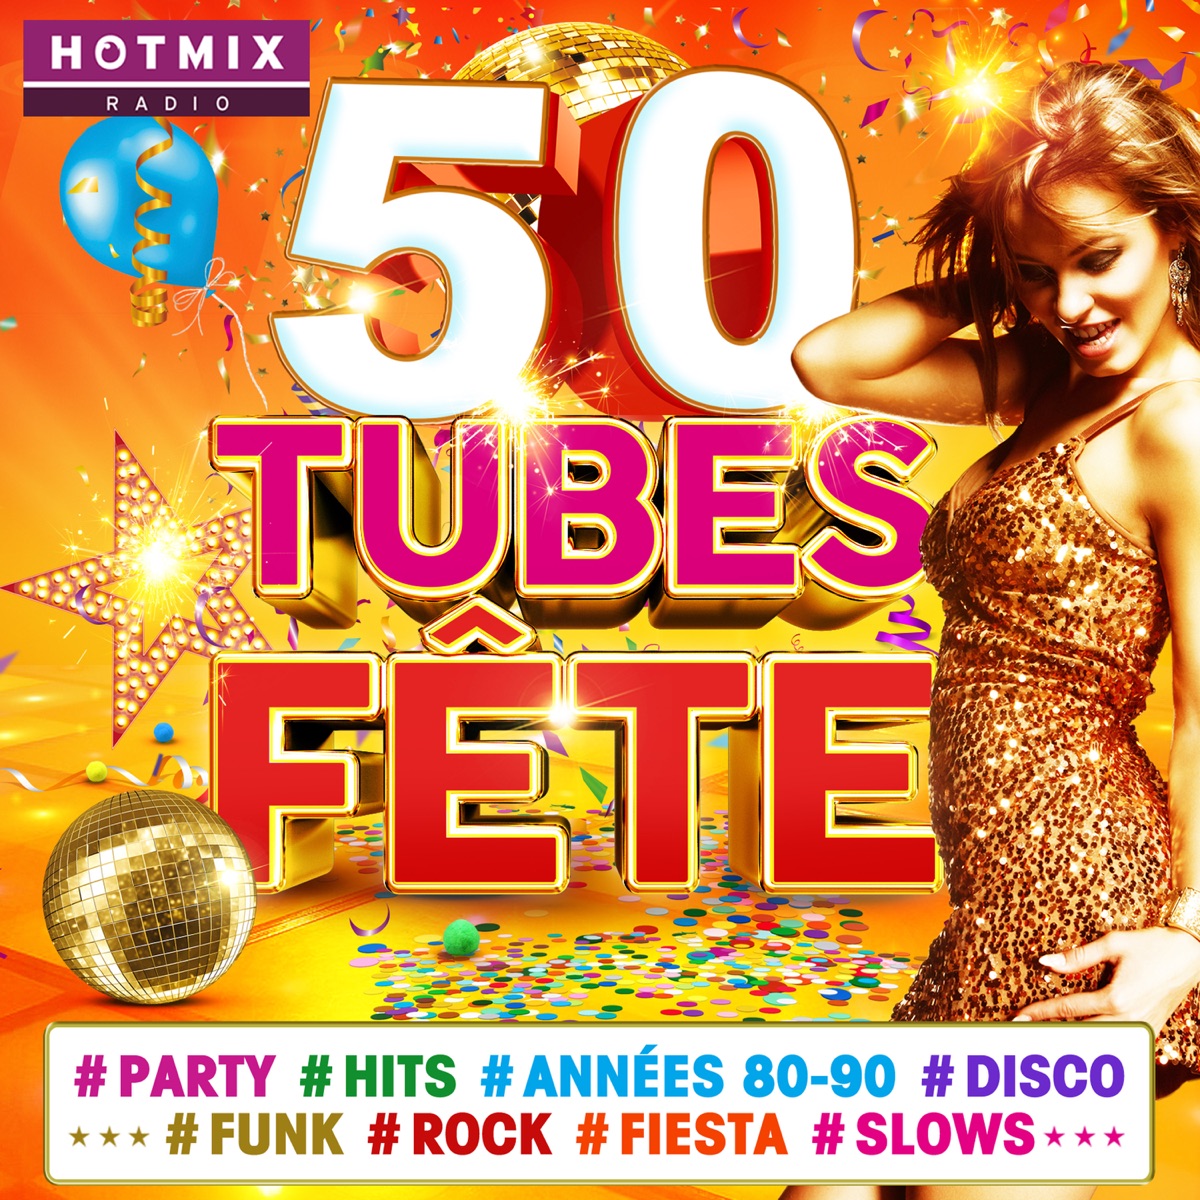 50 Tubes Fête #Party #Hits #Années 80-90 #Disco #Funk #Rock